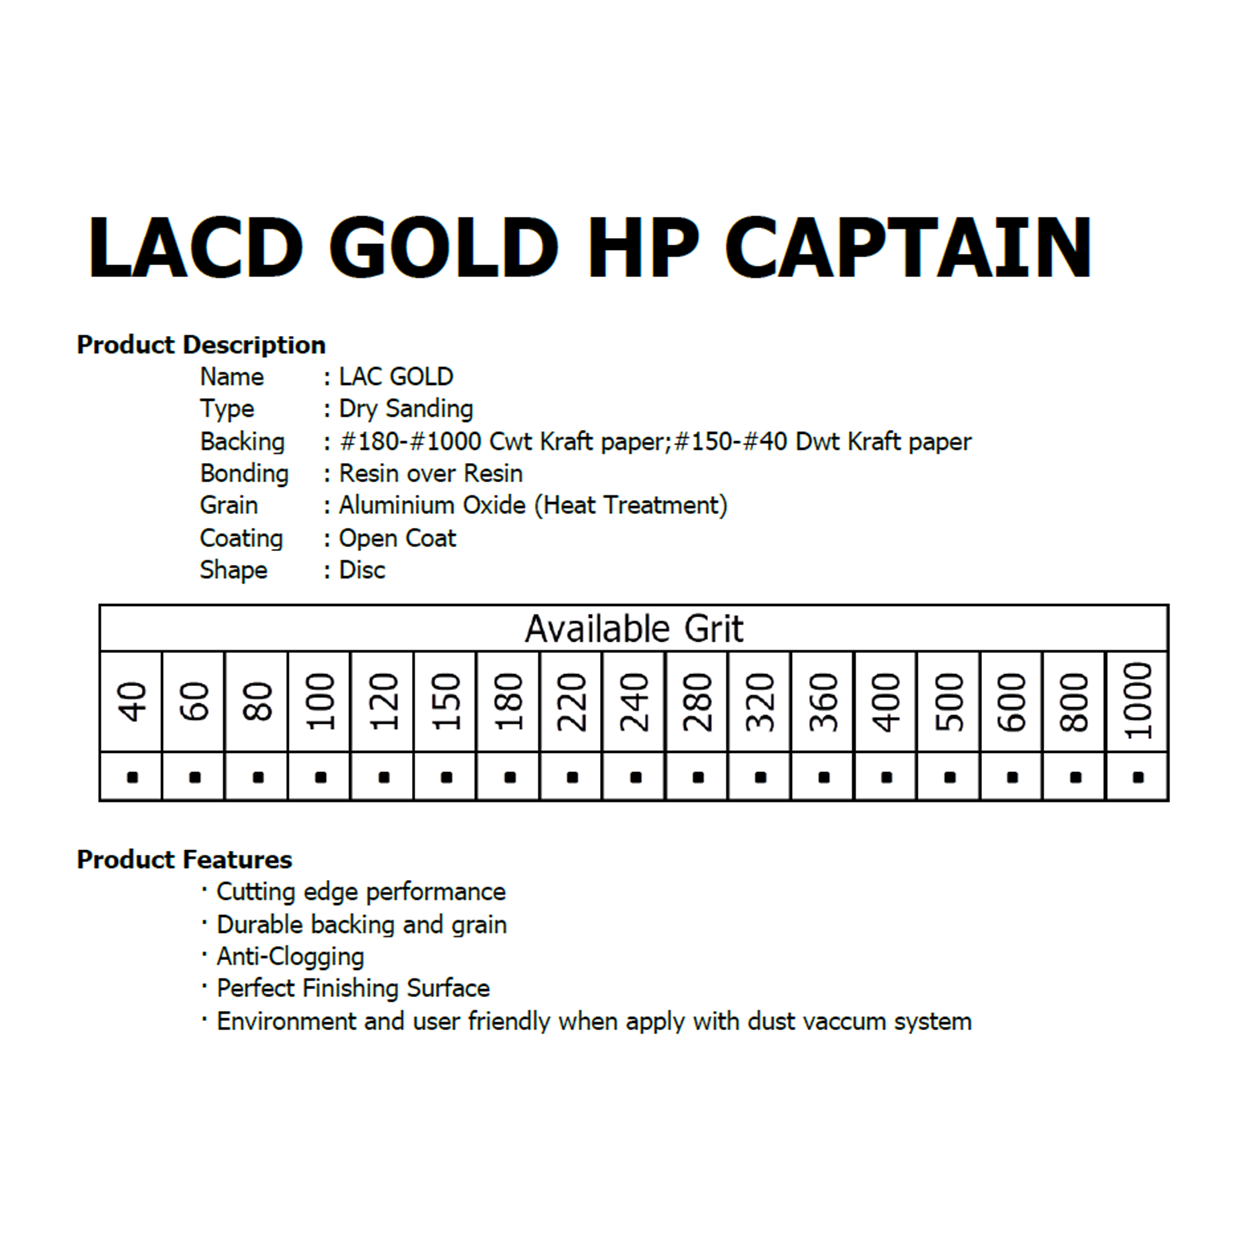 ภาพอธิบายเพิ่มเติมของ กระดาษทราย เบอร์ 320 กระดาษทรายกลมหลังขน กระดาษทรายกลมหลังสักหลาด LACD GOLD-HP CAPTAIN 5 นิ้ว (125mm) 8 รู จำนวน 10 แผ่น